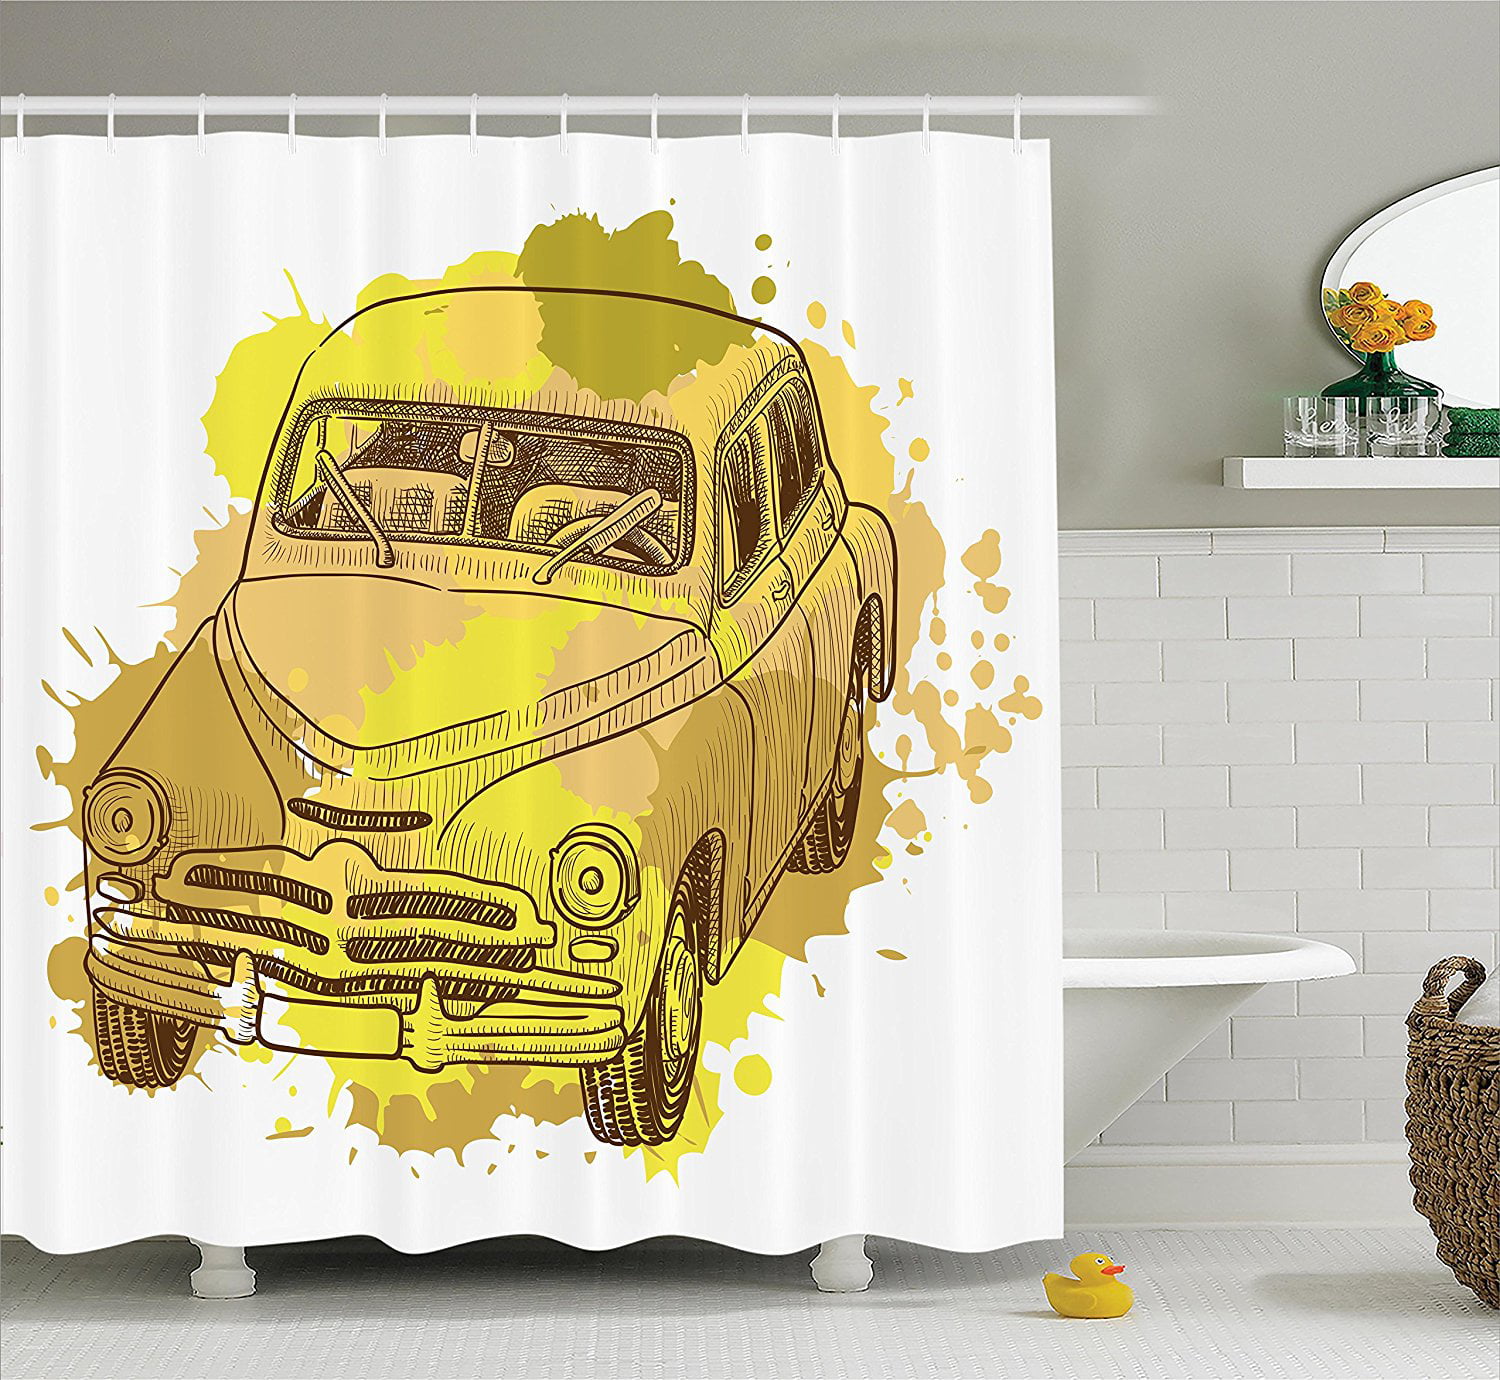 Details about   Vintage Shower Curtain Old Car Grunge Artwork Print for Bathroom 